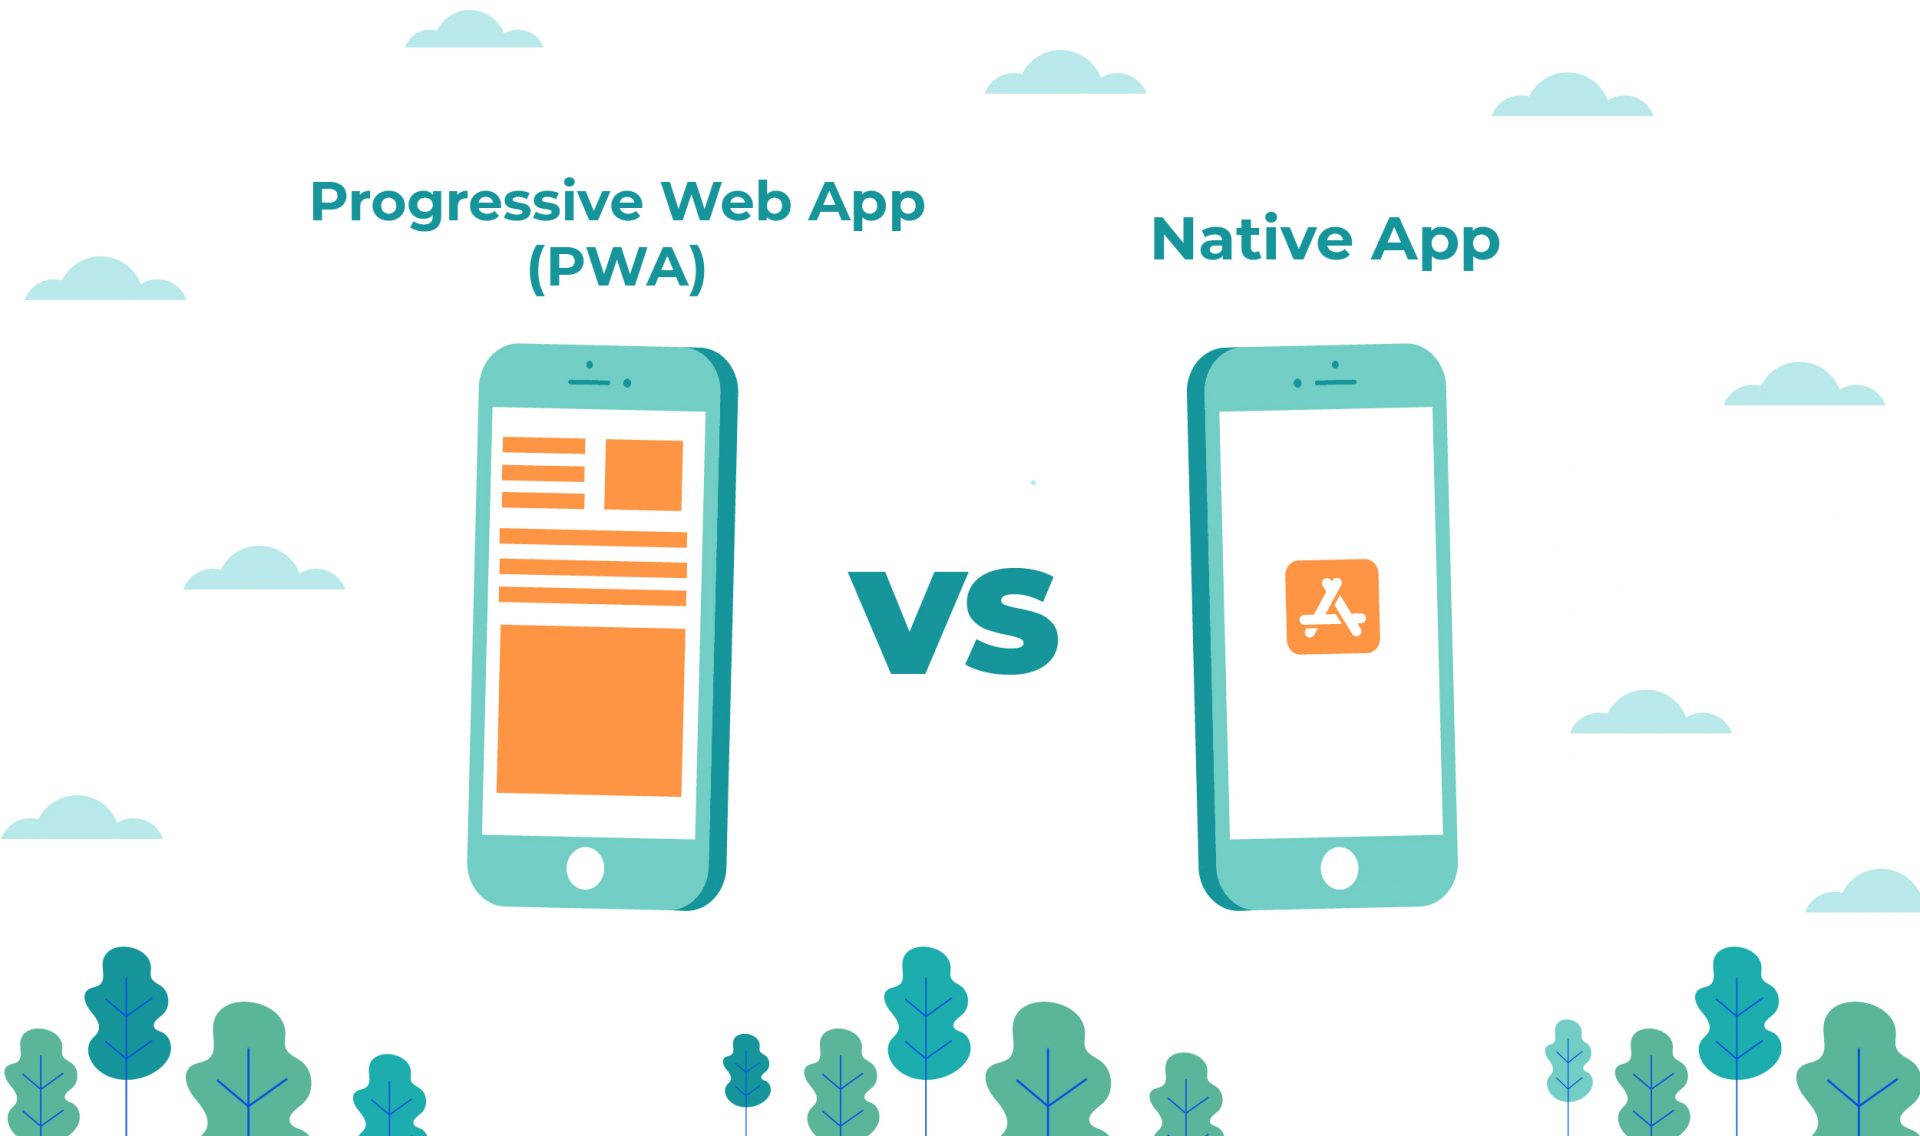 Progressive Web Apps vs Native Apps